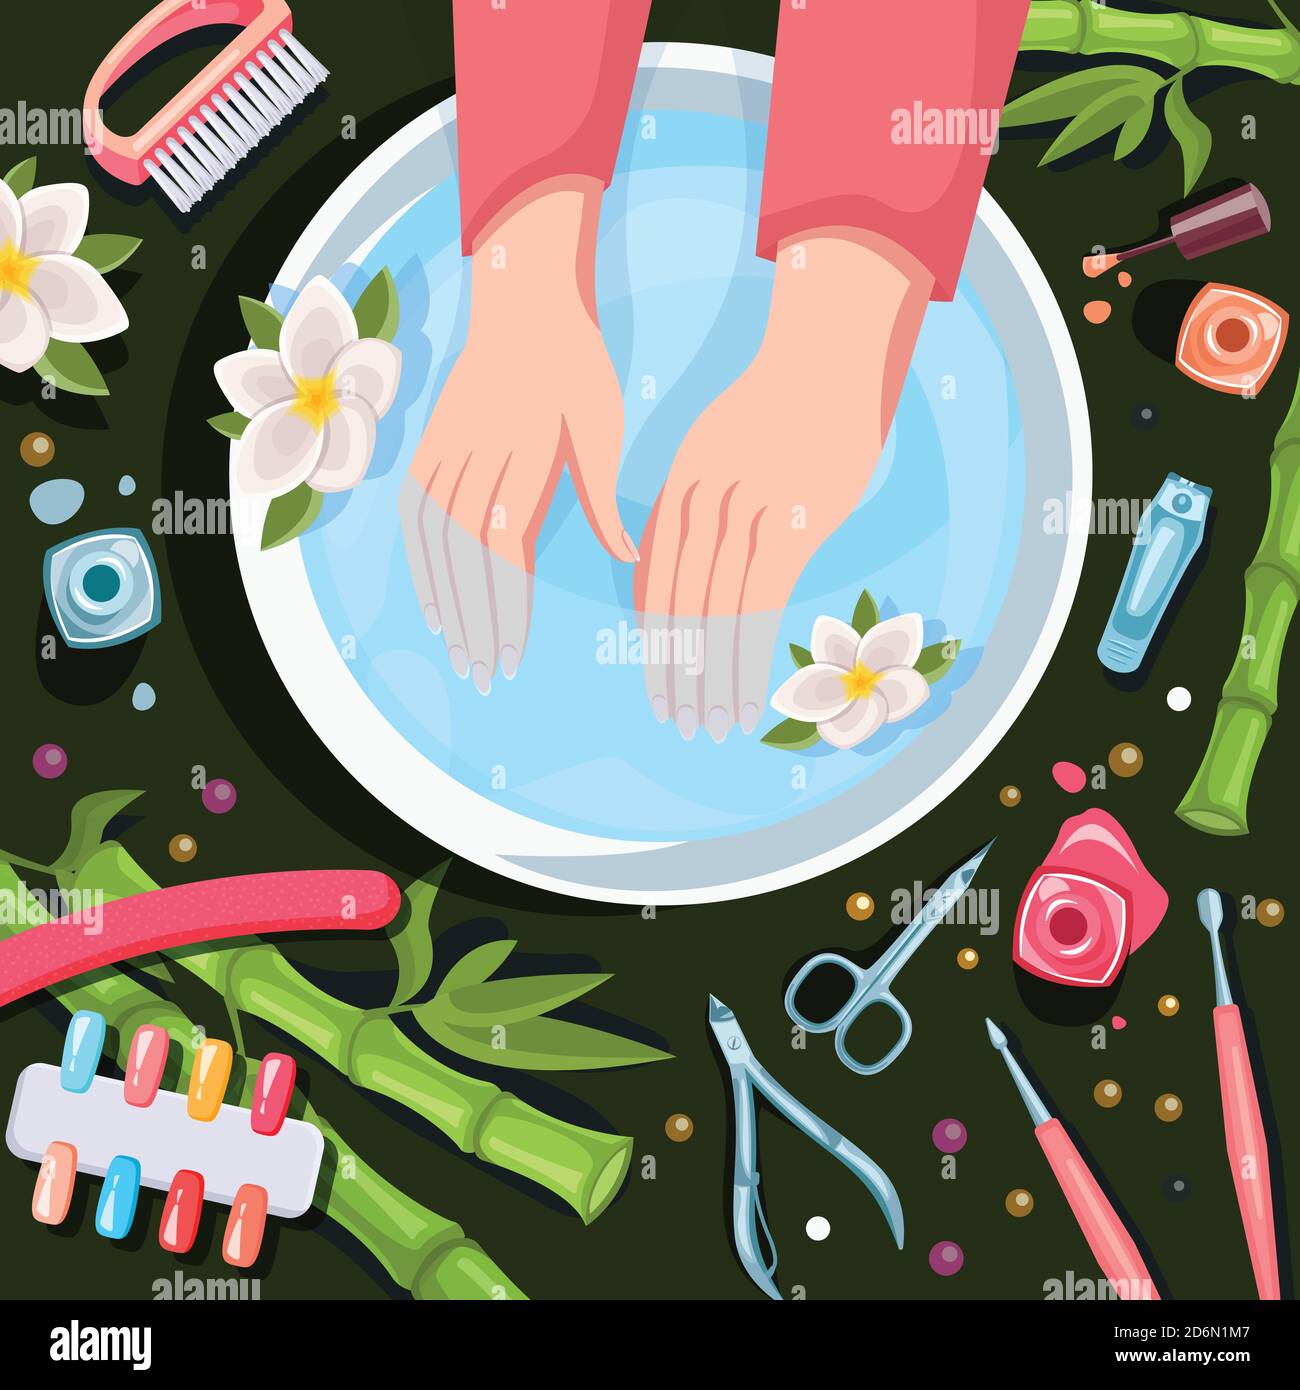 Weibliche Hände in Schüssel mit sauberem Wasser, Draufsicht Vektor-Karikatur-Illustration. Spa-Behandlungen, Maniküre und entspannen. Schönheitssalon Hände und Nägel Pflege. Stock Vektor